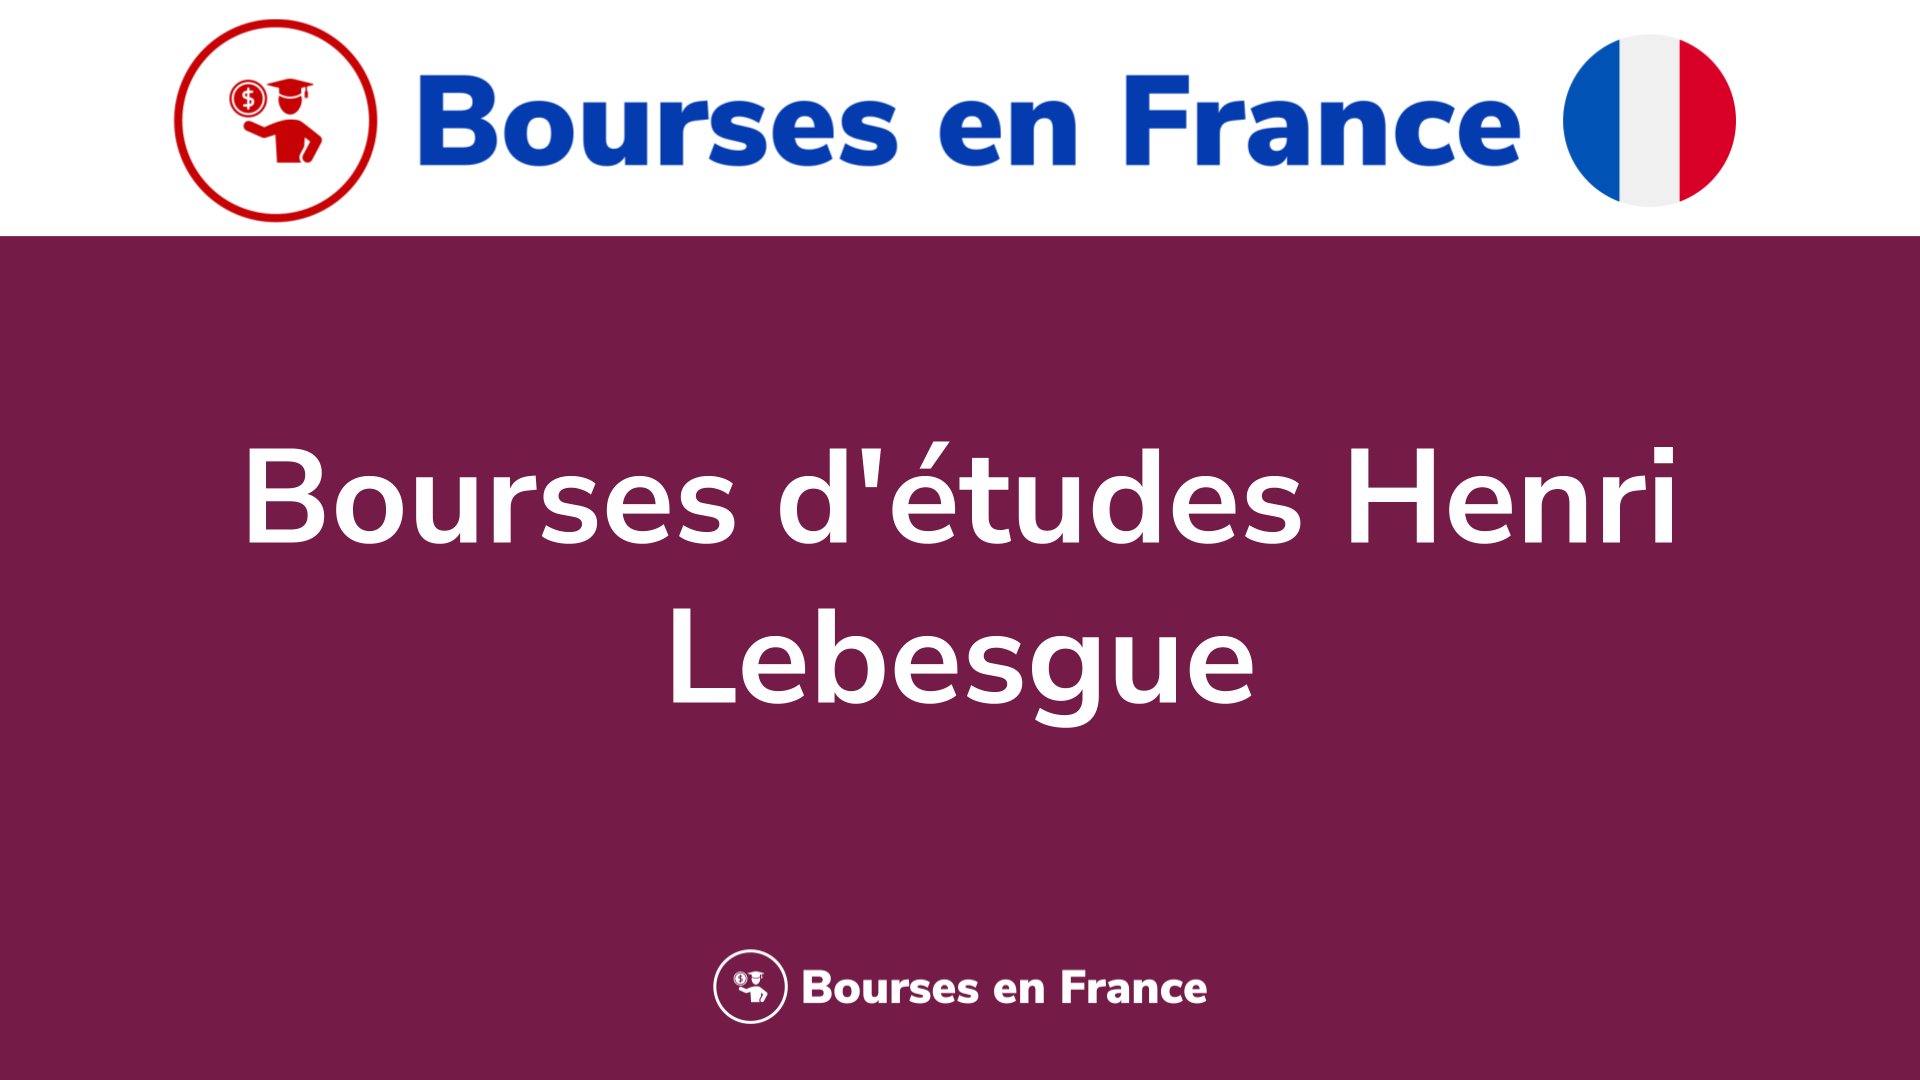 Bourses d'études Henri Lebesgue